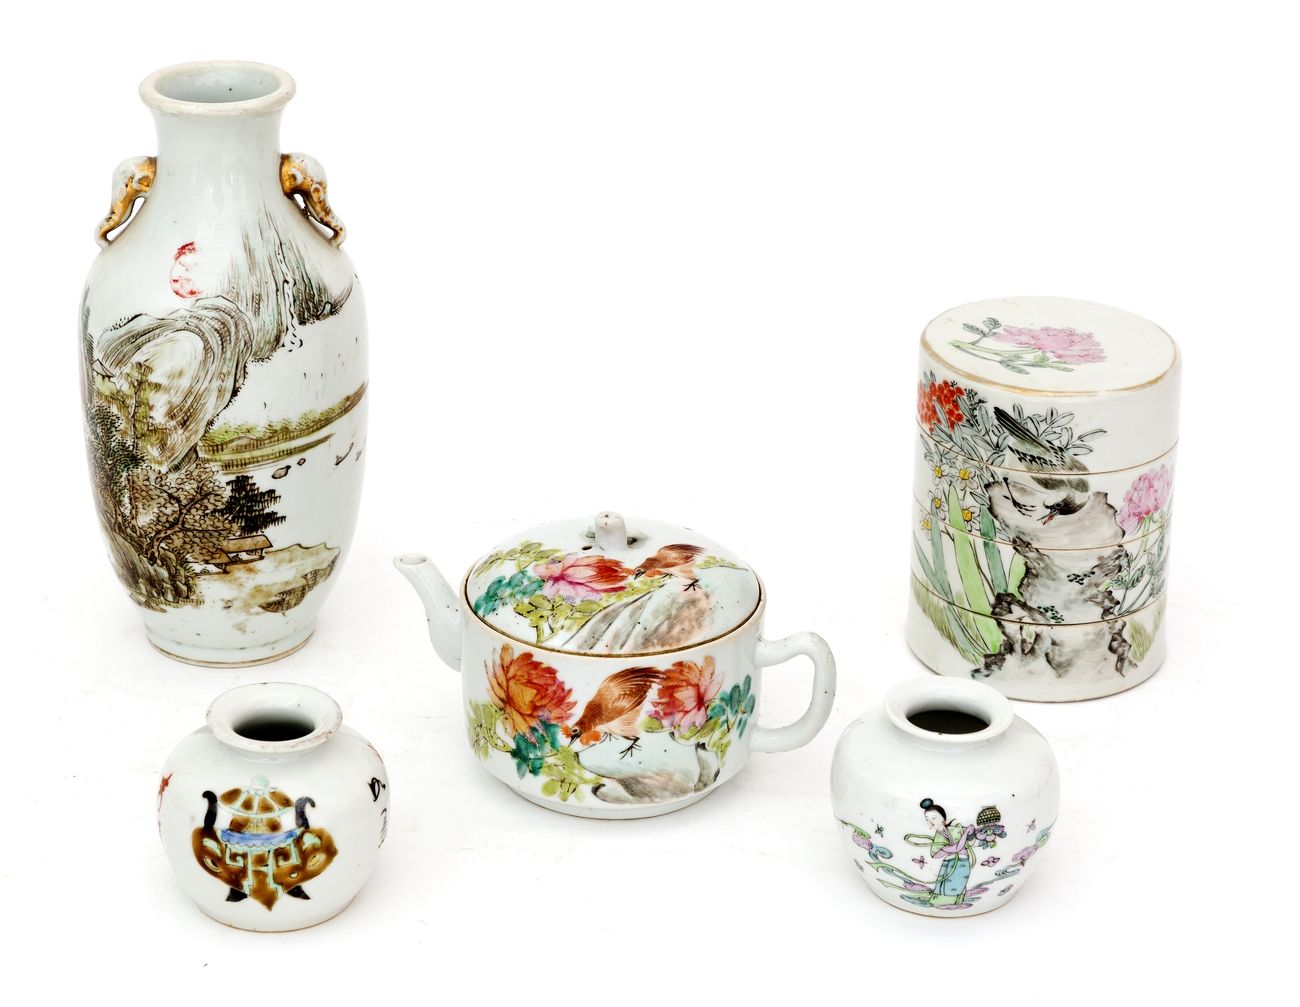 Chine, XIXe siècle Lot comprenant un vase, une théière, une boîte à trois compar&hellip;